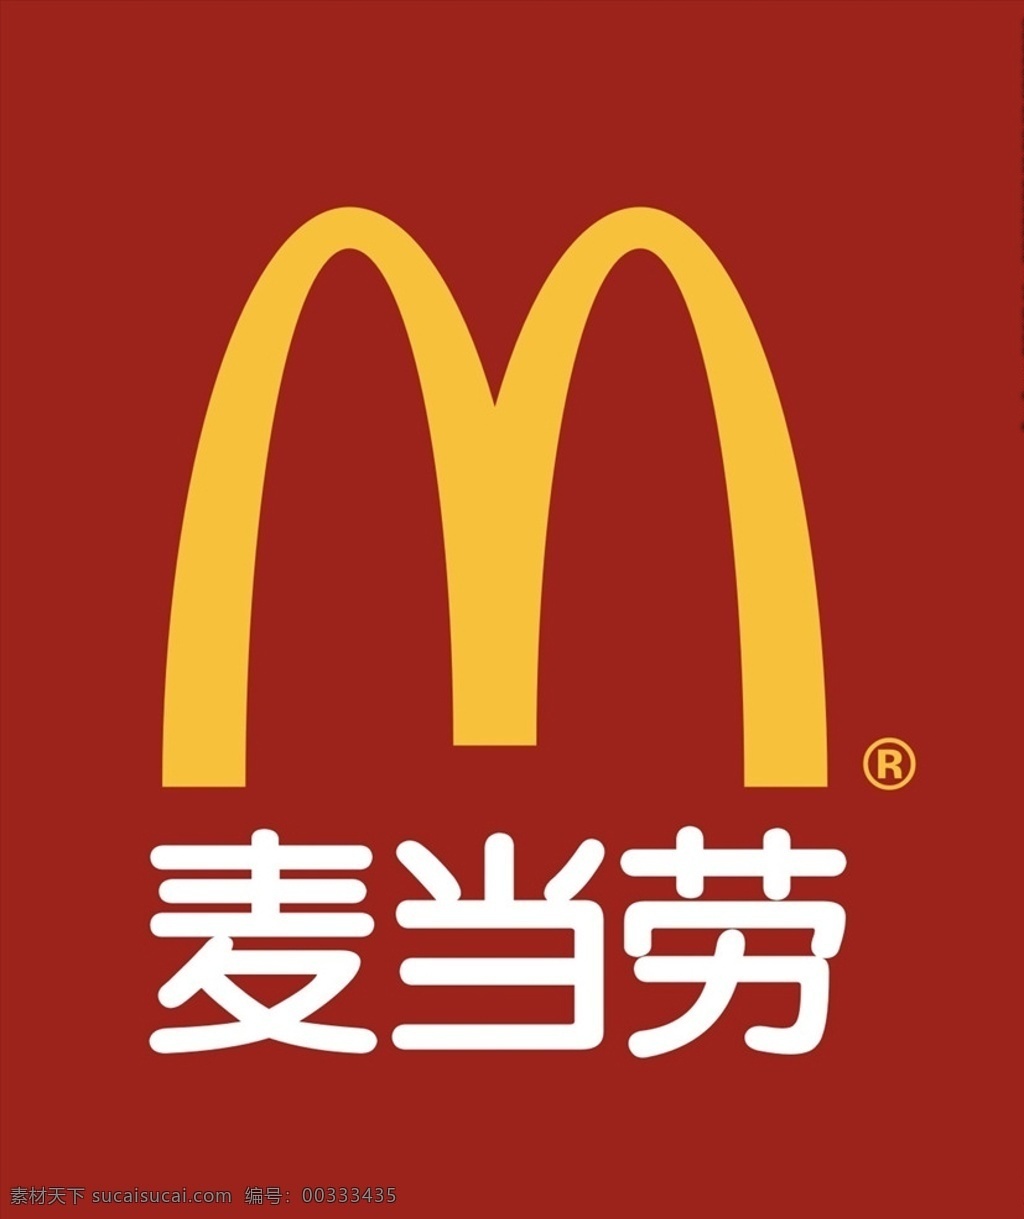 麦当劳 快餐 矢量 炸鸡 图标 薯条 底纹边框 其他素材 logo 标志